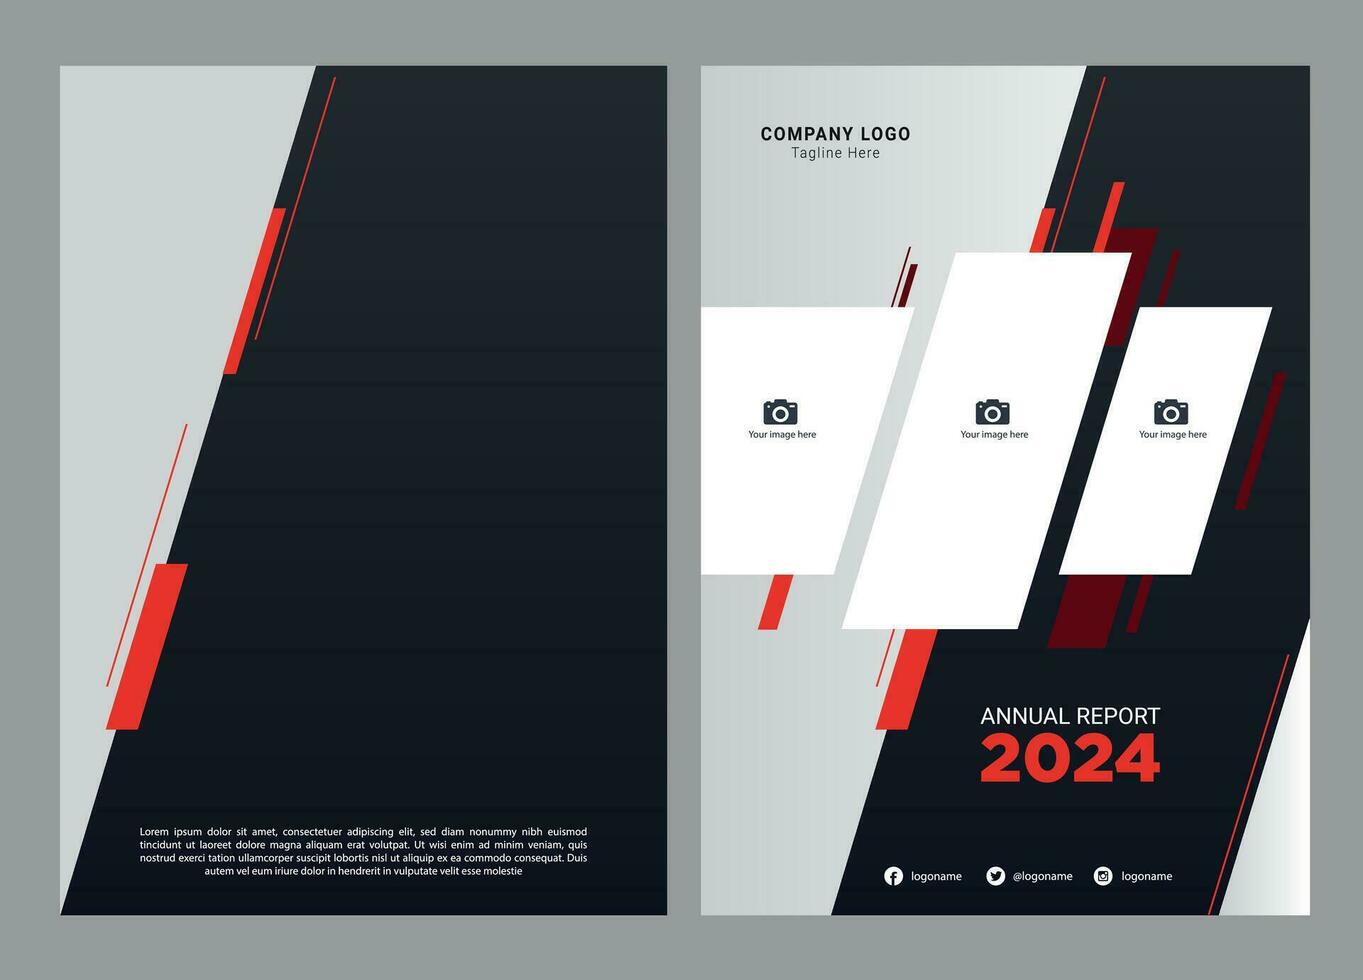 Annual Report Cover Design vector